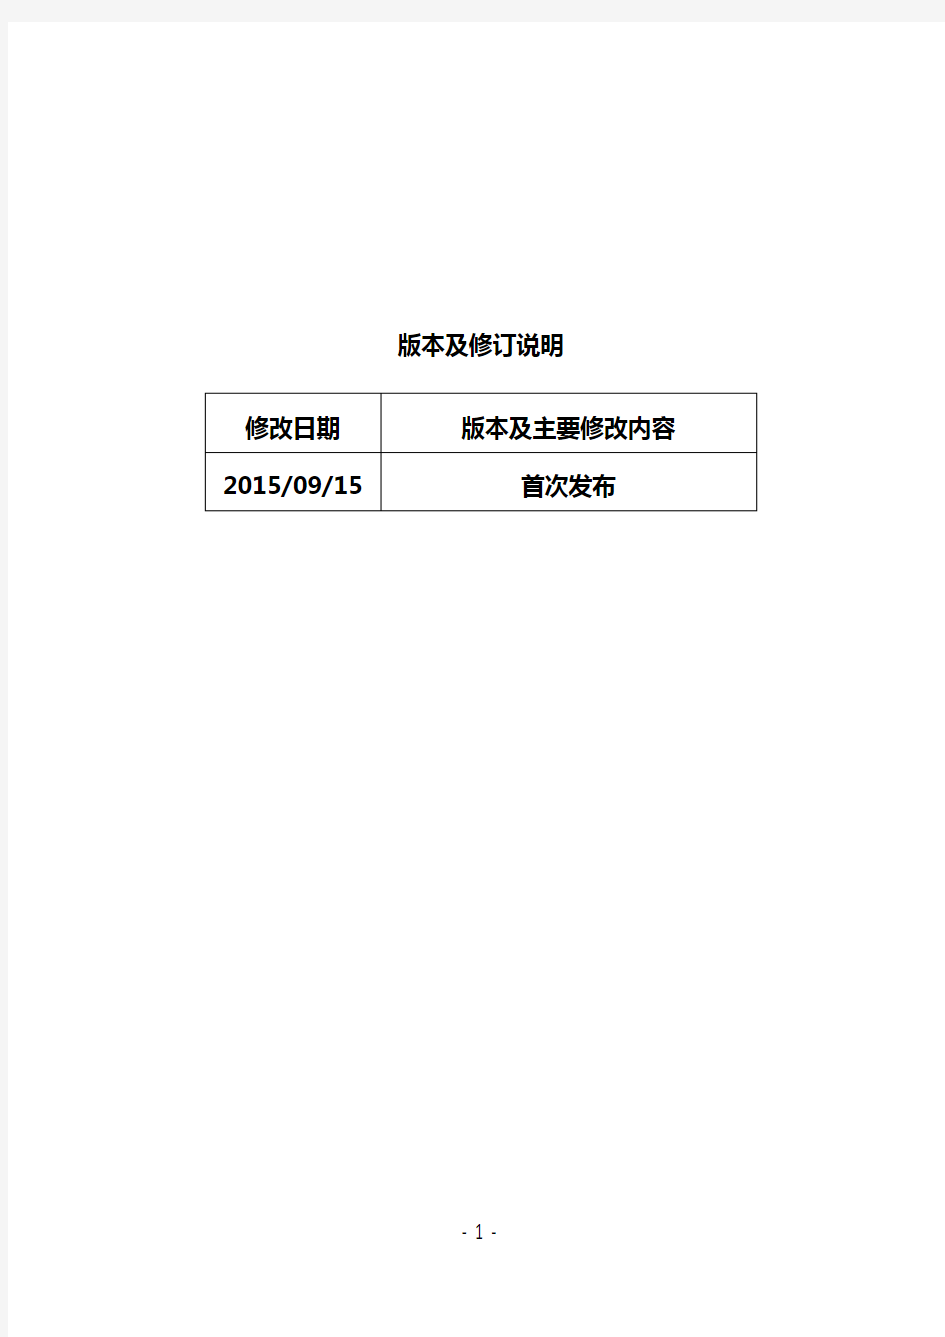 上海证券交易所公司债券预审核指南(二)申请文件的签章--2015.9.15